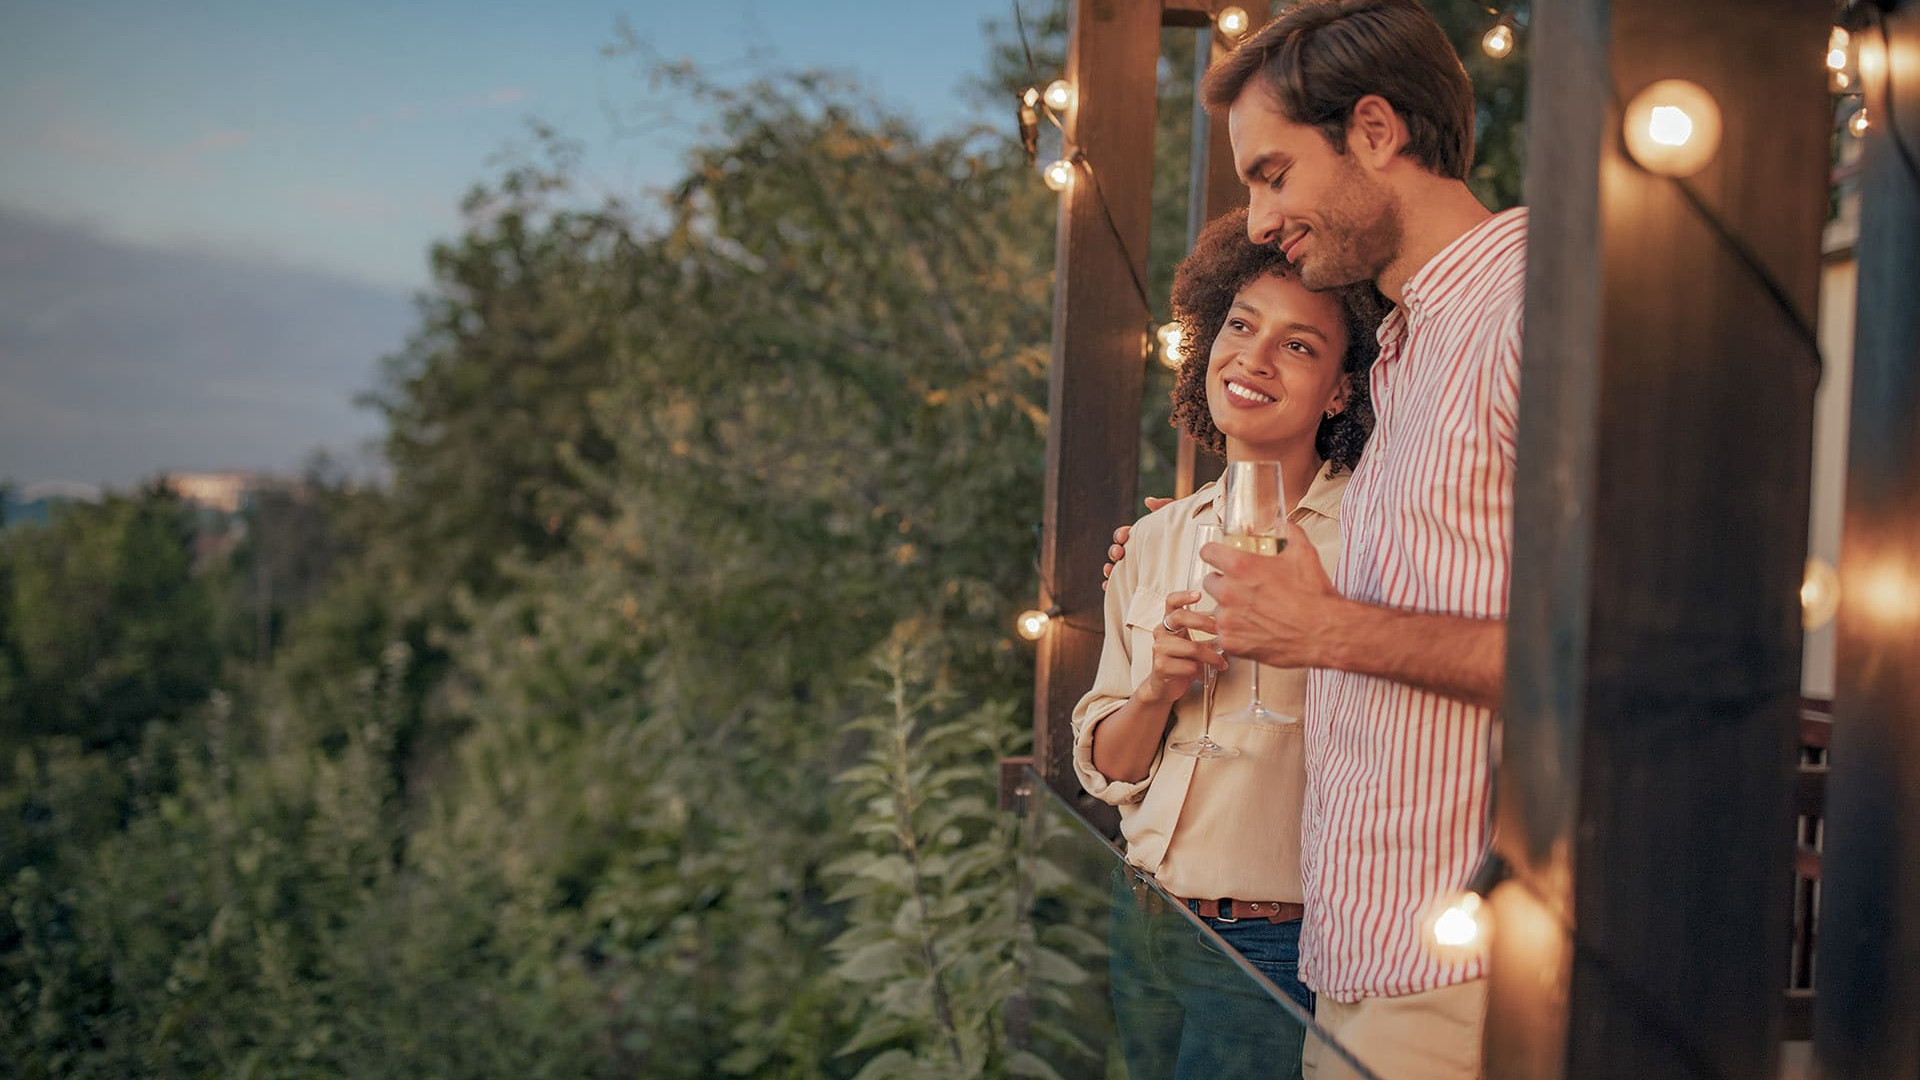 Ein Paar beim Aperitif bei Sonnenuntergang und einem Glas Wein auf der Terrasse, ein Moment purer Romantik.